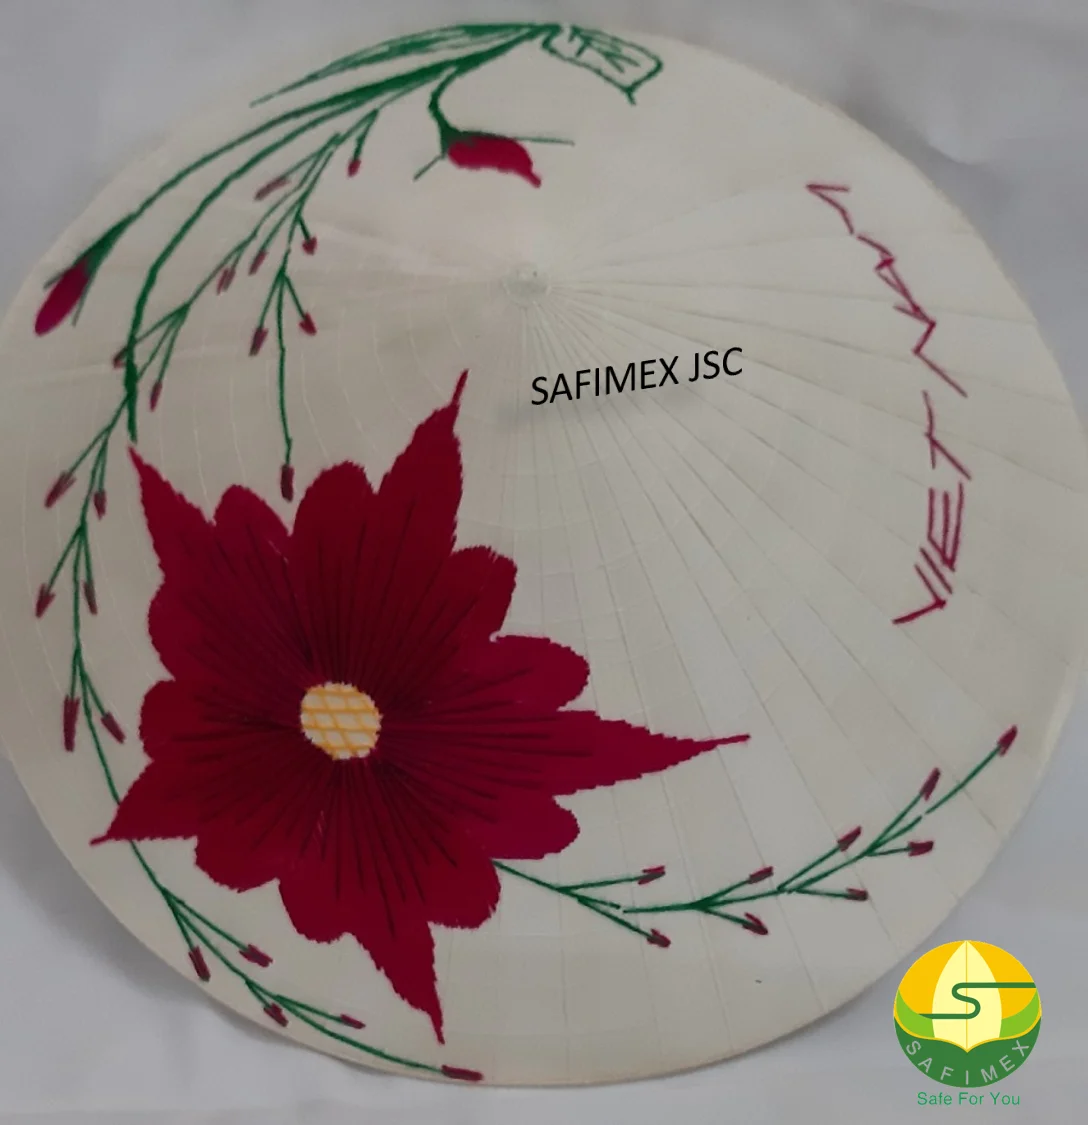 Vẽ hoa sen trên nón lá là một nghệ thuật đẹp mắt và đầy màu sắc. Hãy cùng khám phá bức tranh tuyệt đẹp này trên nón lá để thấy được tinh hoa văn hóa Việt Nam như thế nào. Hình ảnh sẽ khiến bạn bị mê hoặc và cảm nhận được sự tinh tế của nghệ thuật này.